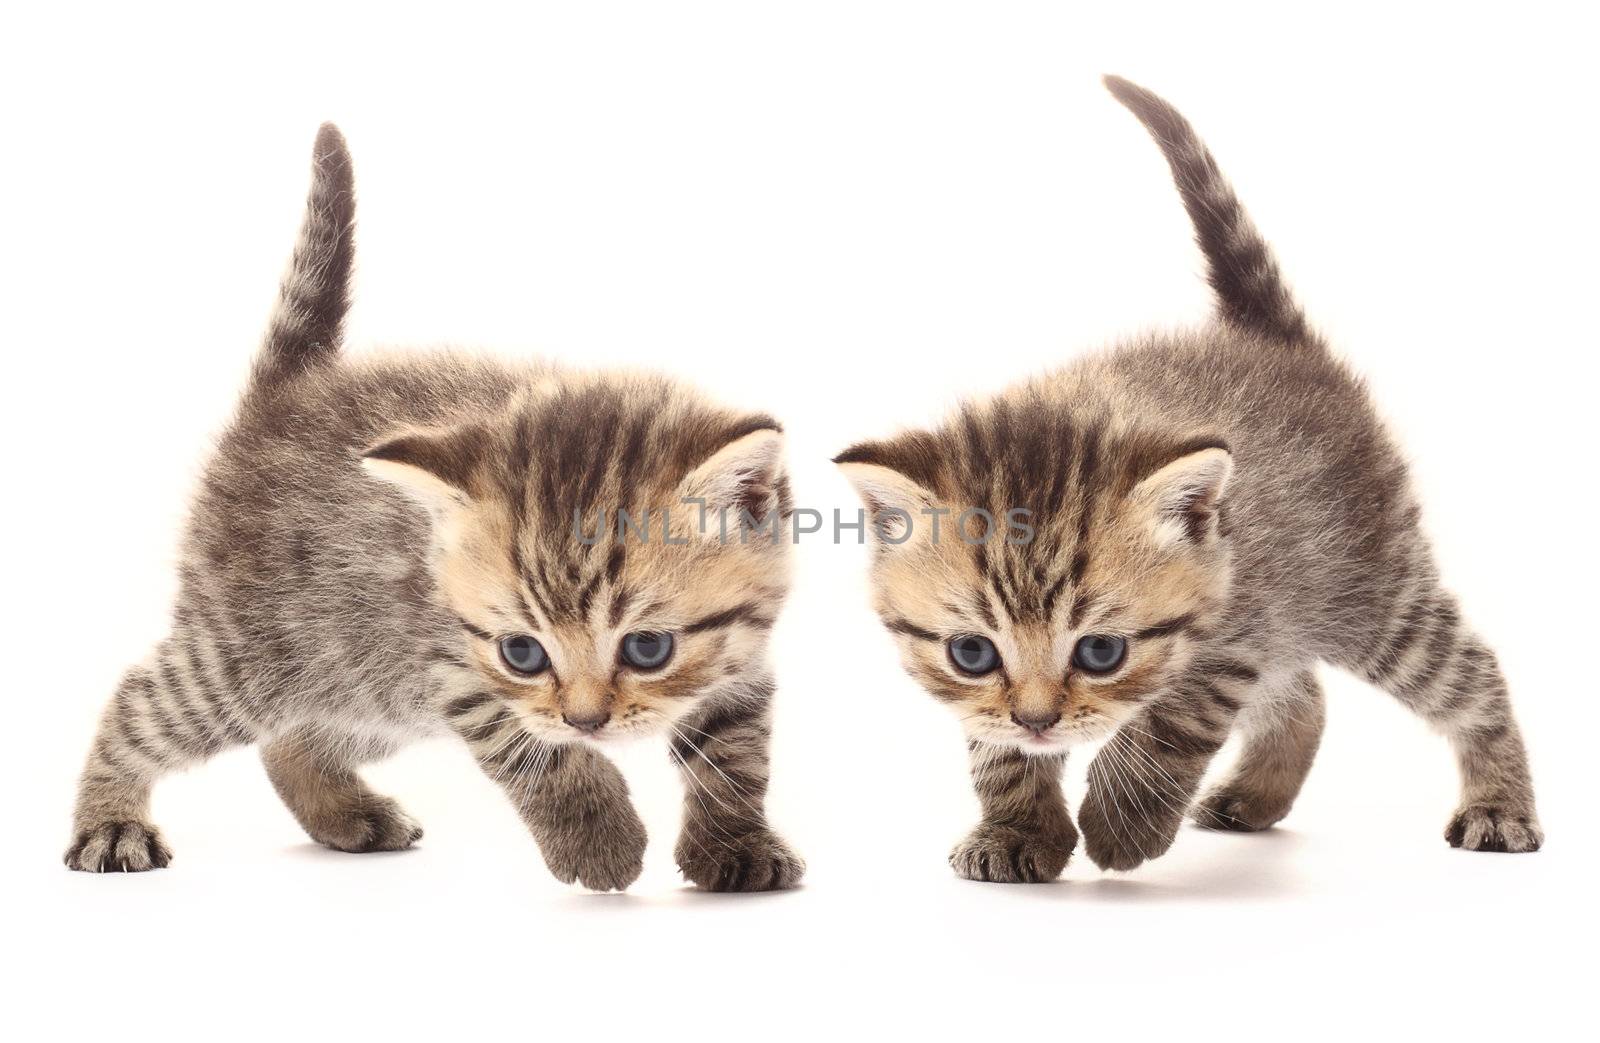 Kittens by ksenish